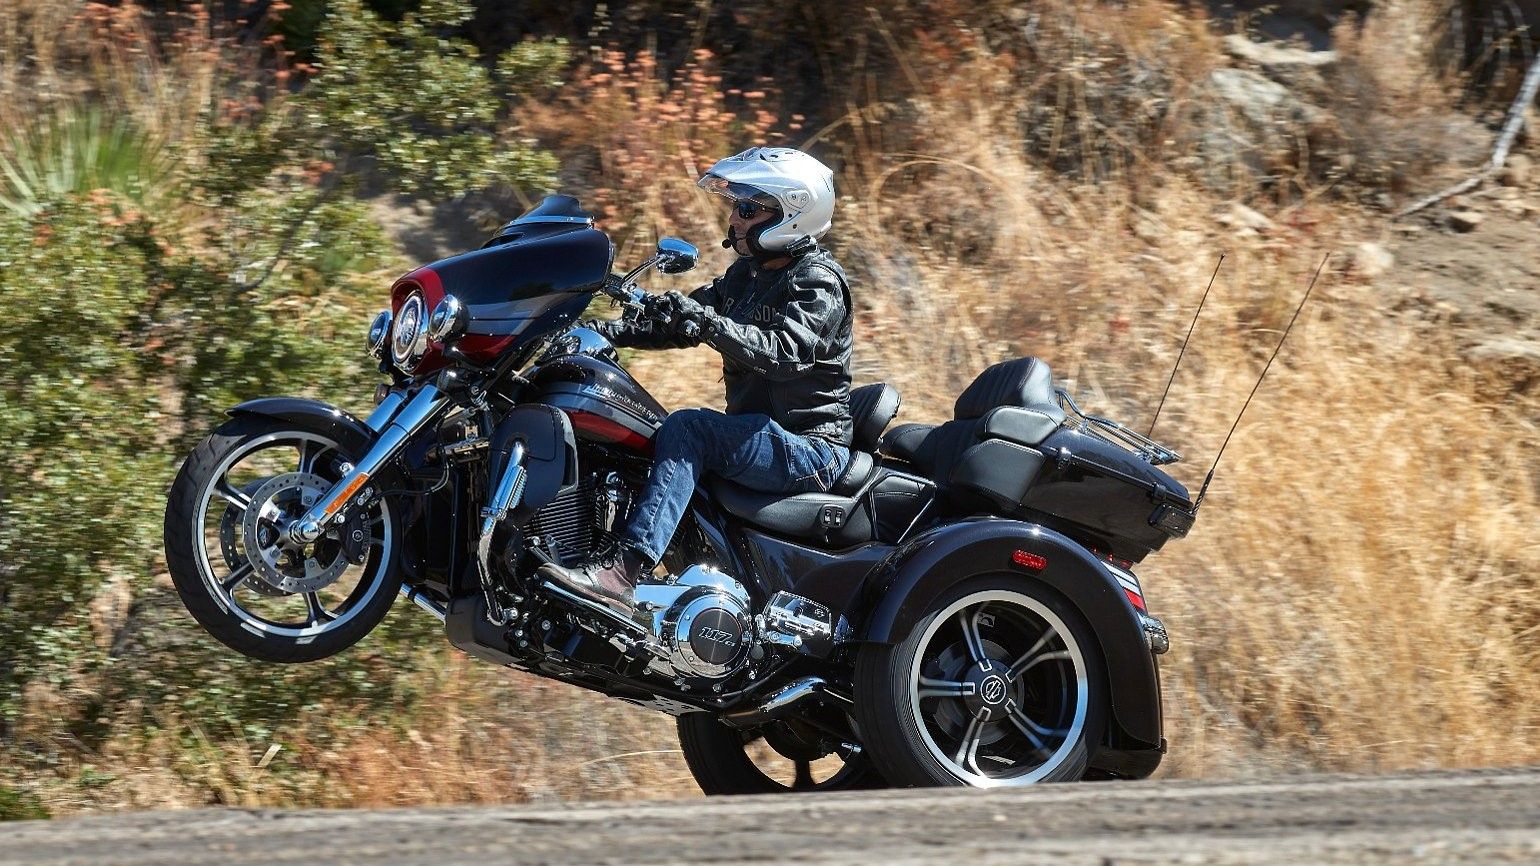 Harley Davidson CVO Tri Glide wheelie side view